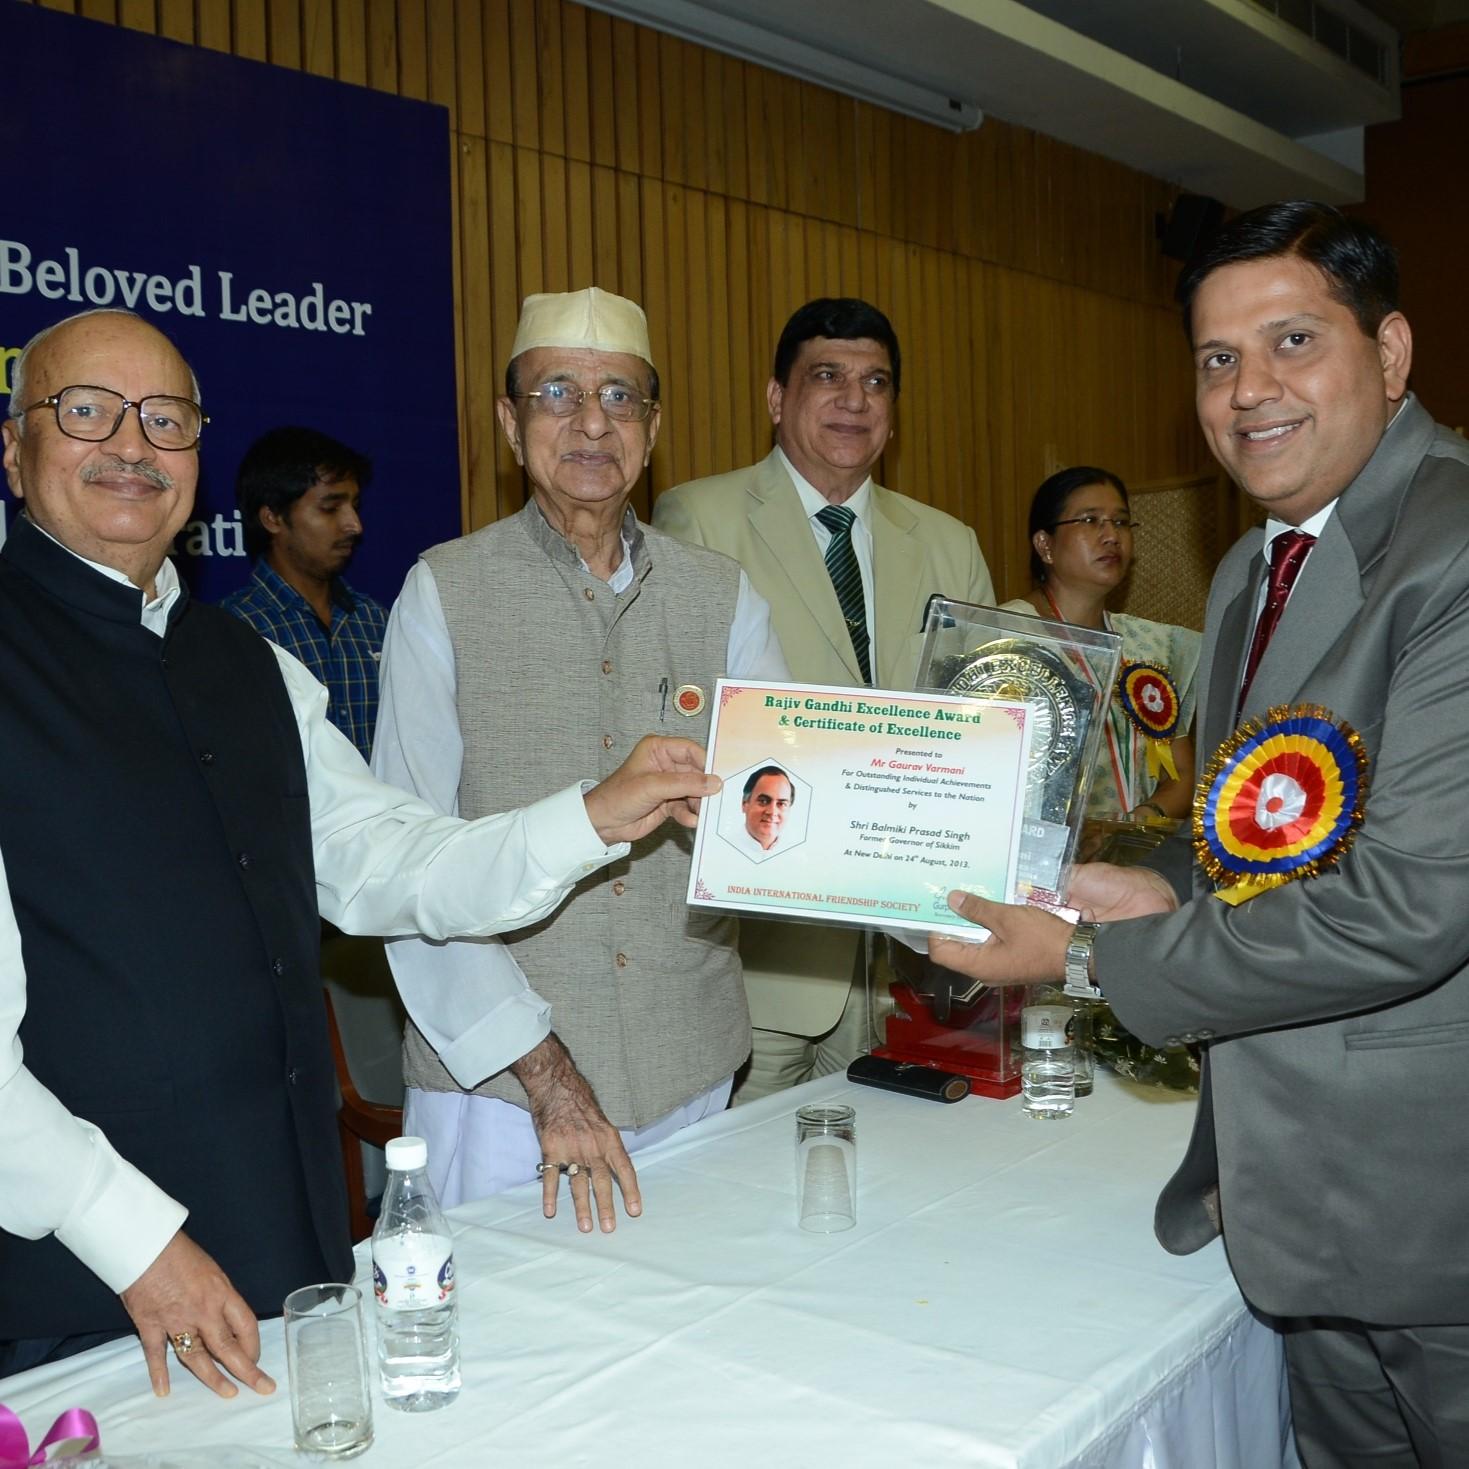 Rajiv Gandhi Award for Excellence 2013